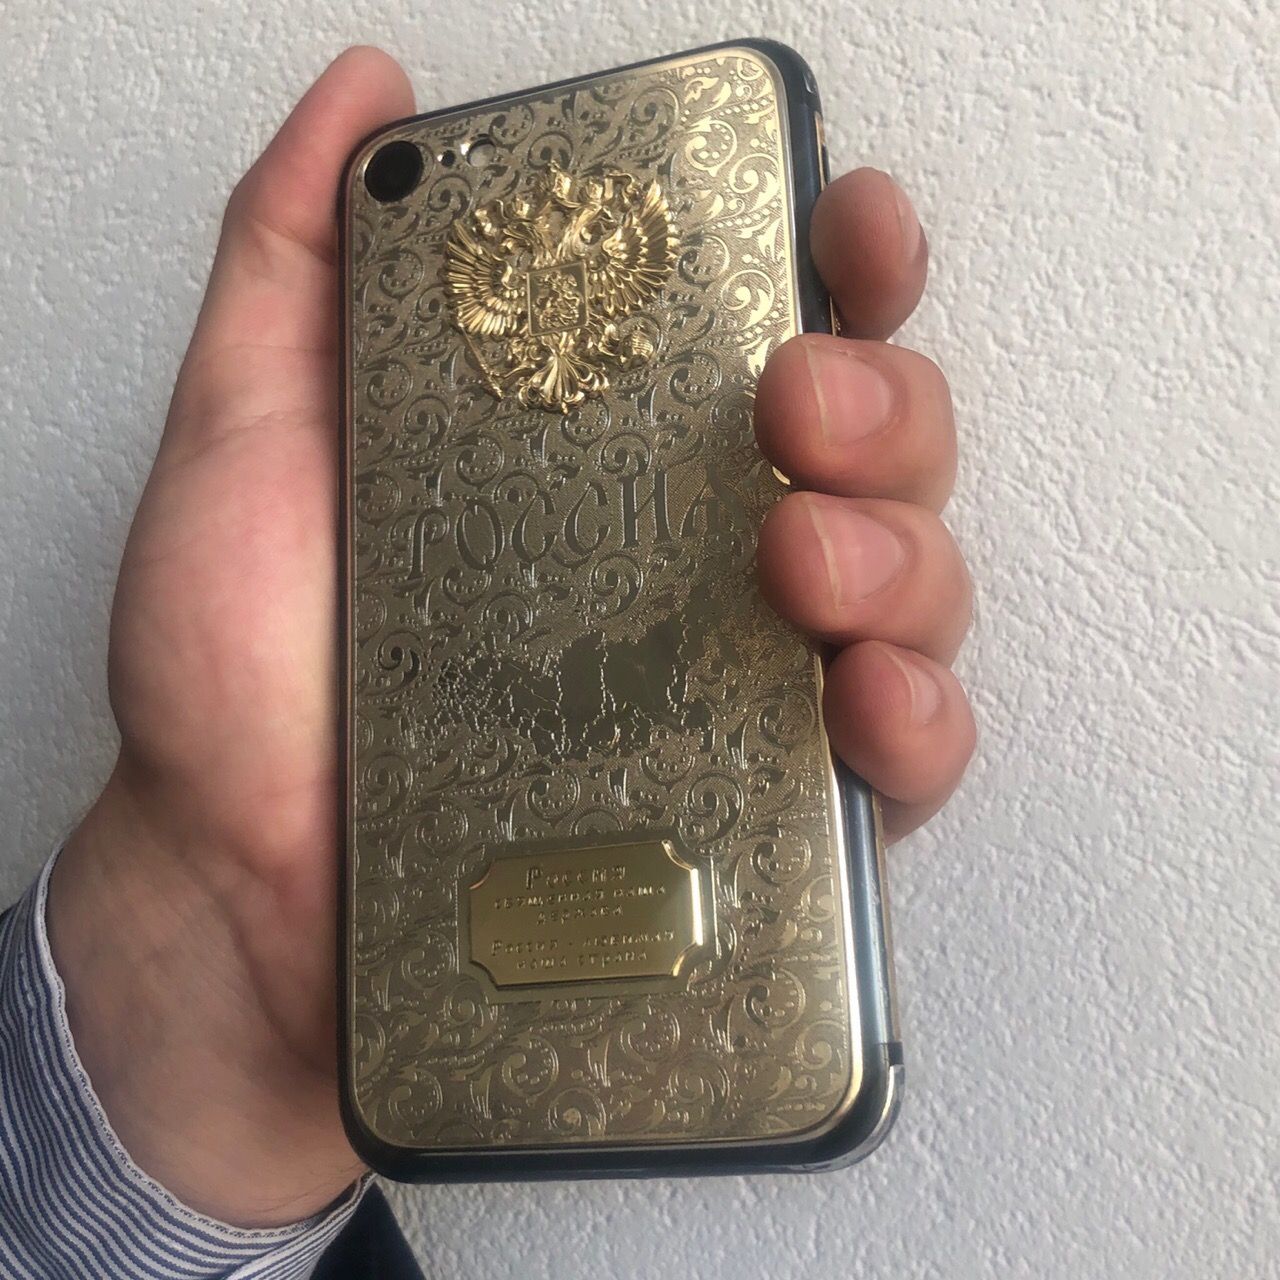 Чехол для iphone из золота